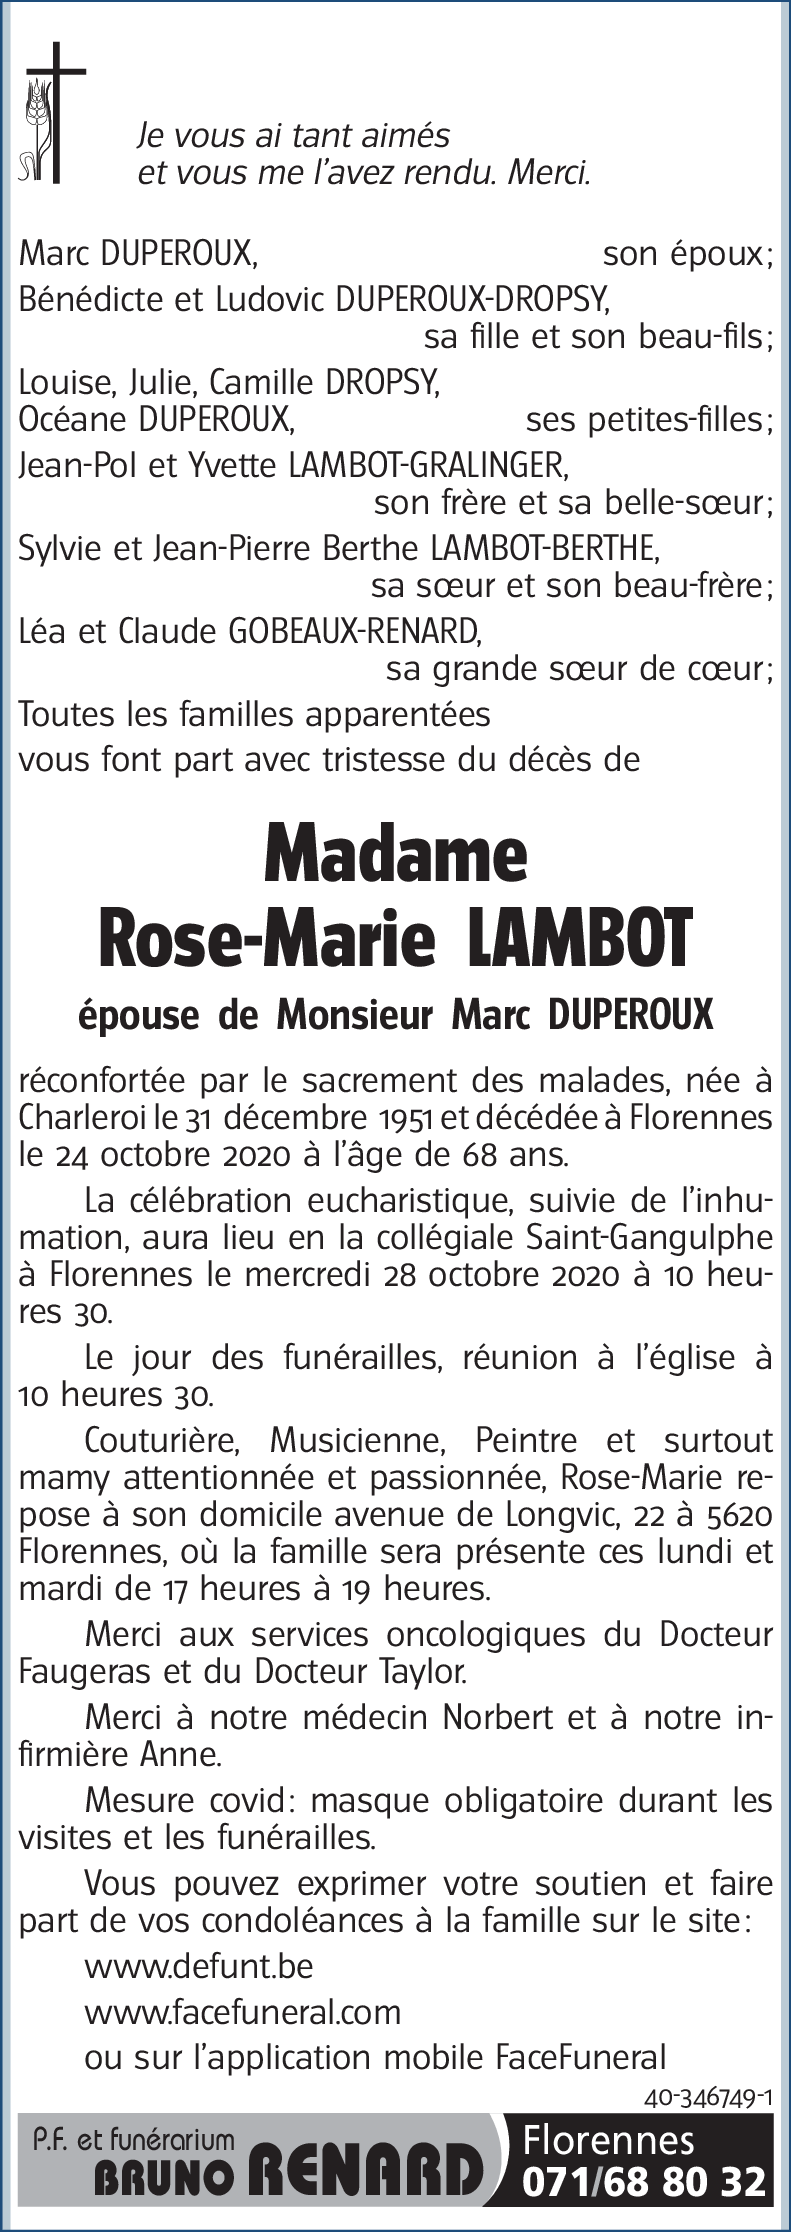 Rose-Marie LAMBOT